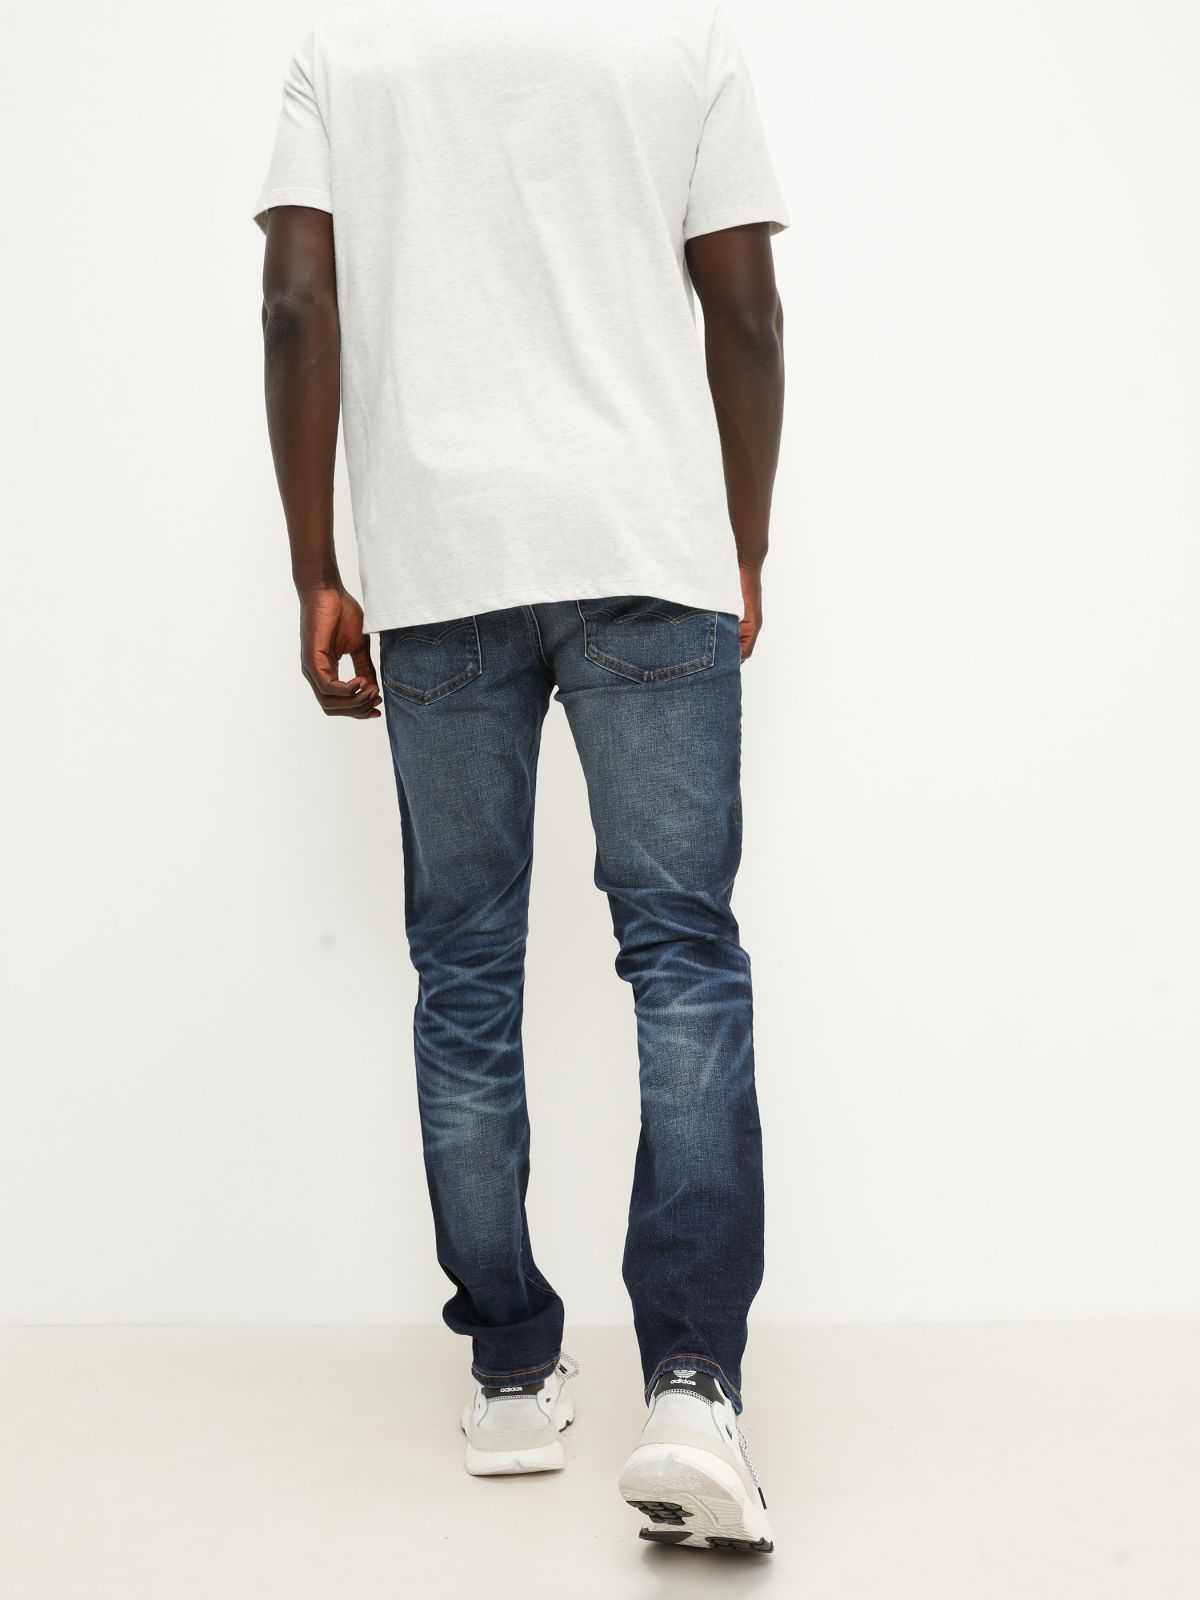  ג'ינס בשילוב שפשופים Slim של AMERICAN EAGLE